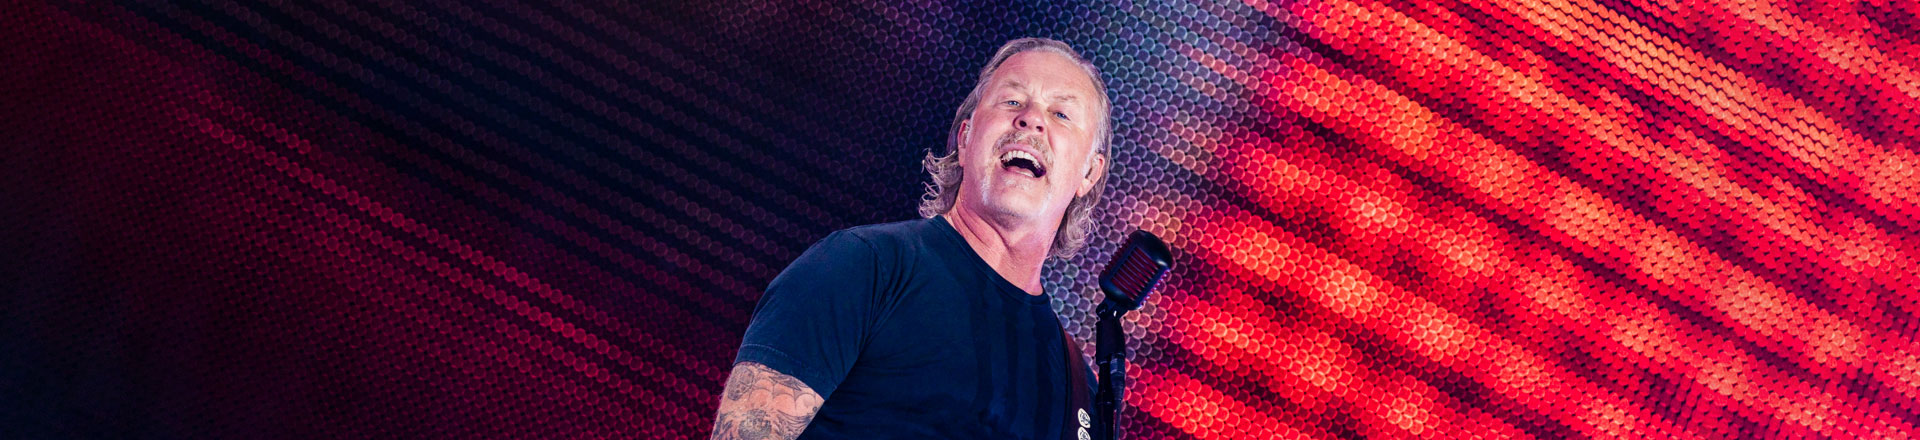 RELACJA: Metallica w Warszawie